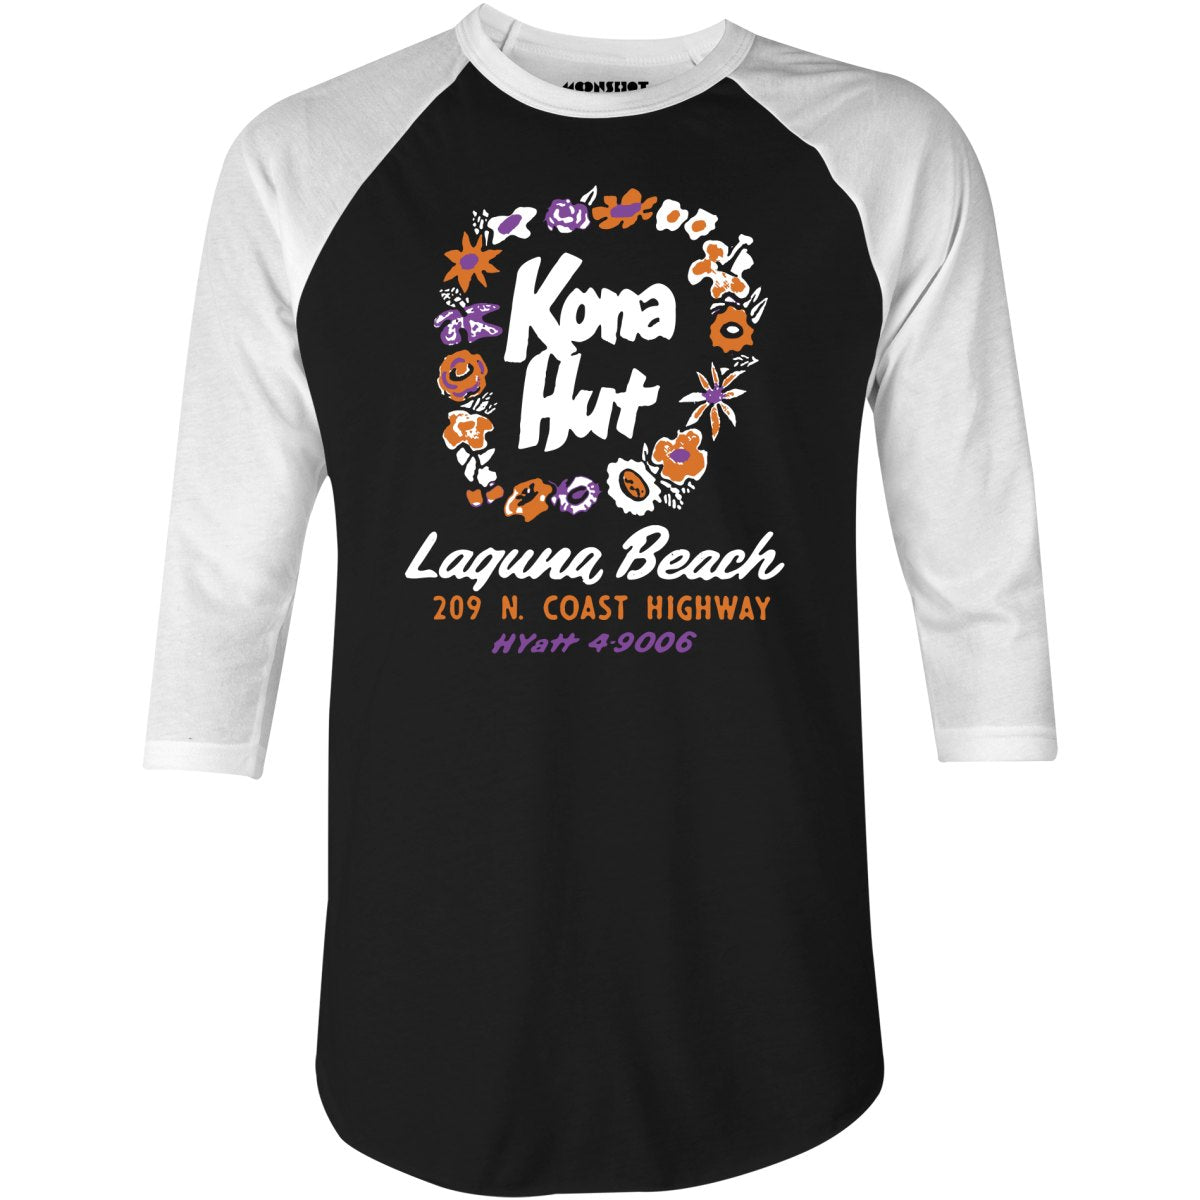 Kona Hut - Laguna Beach, CA - Vintage Tiki Bar - 3/4 Sleeve Raglan T-Shirt